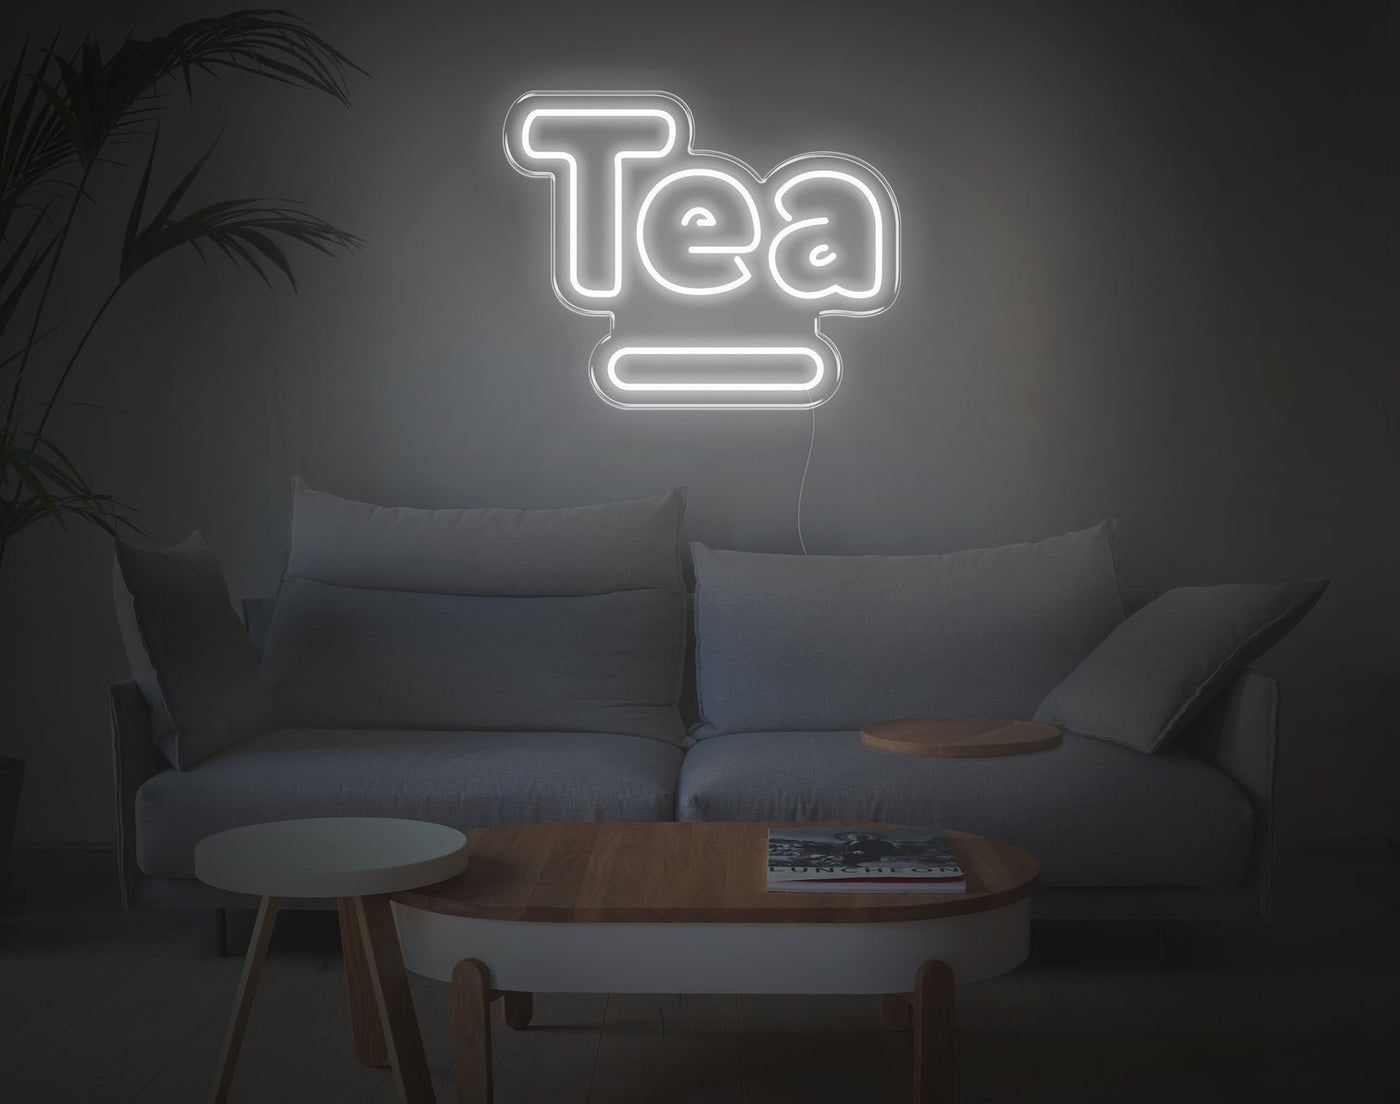 Tea V1 LED Neon Sign - 16inch x 20inchWhite